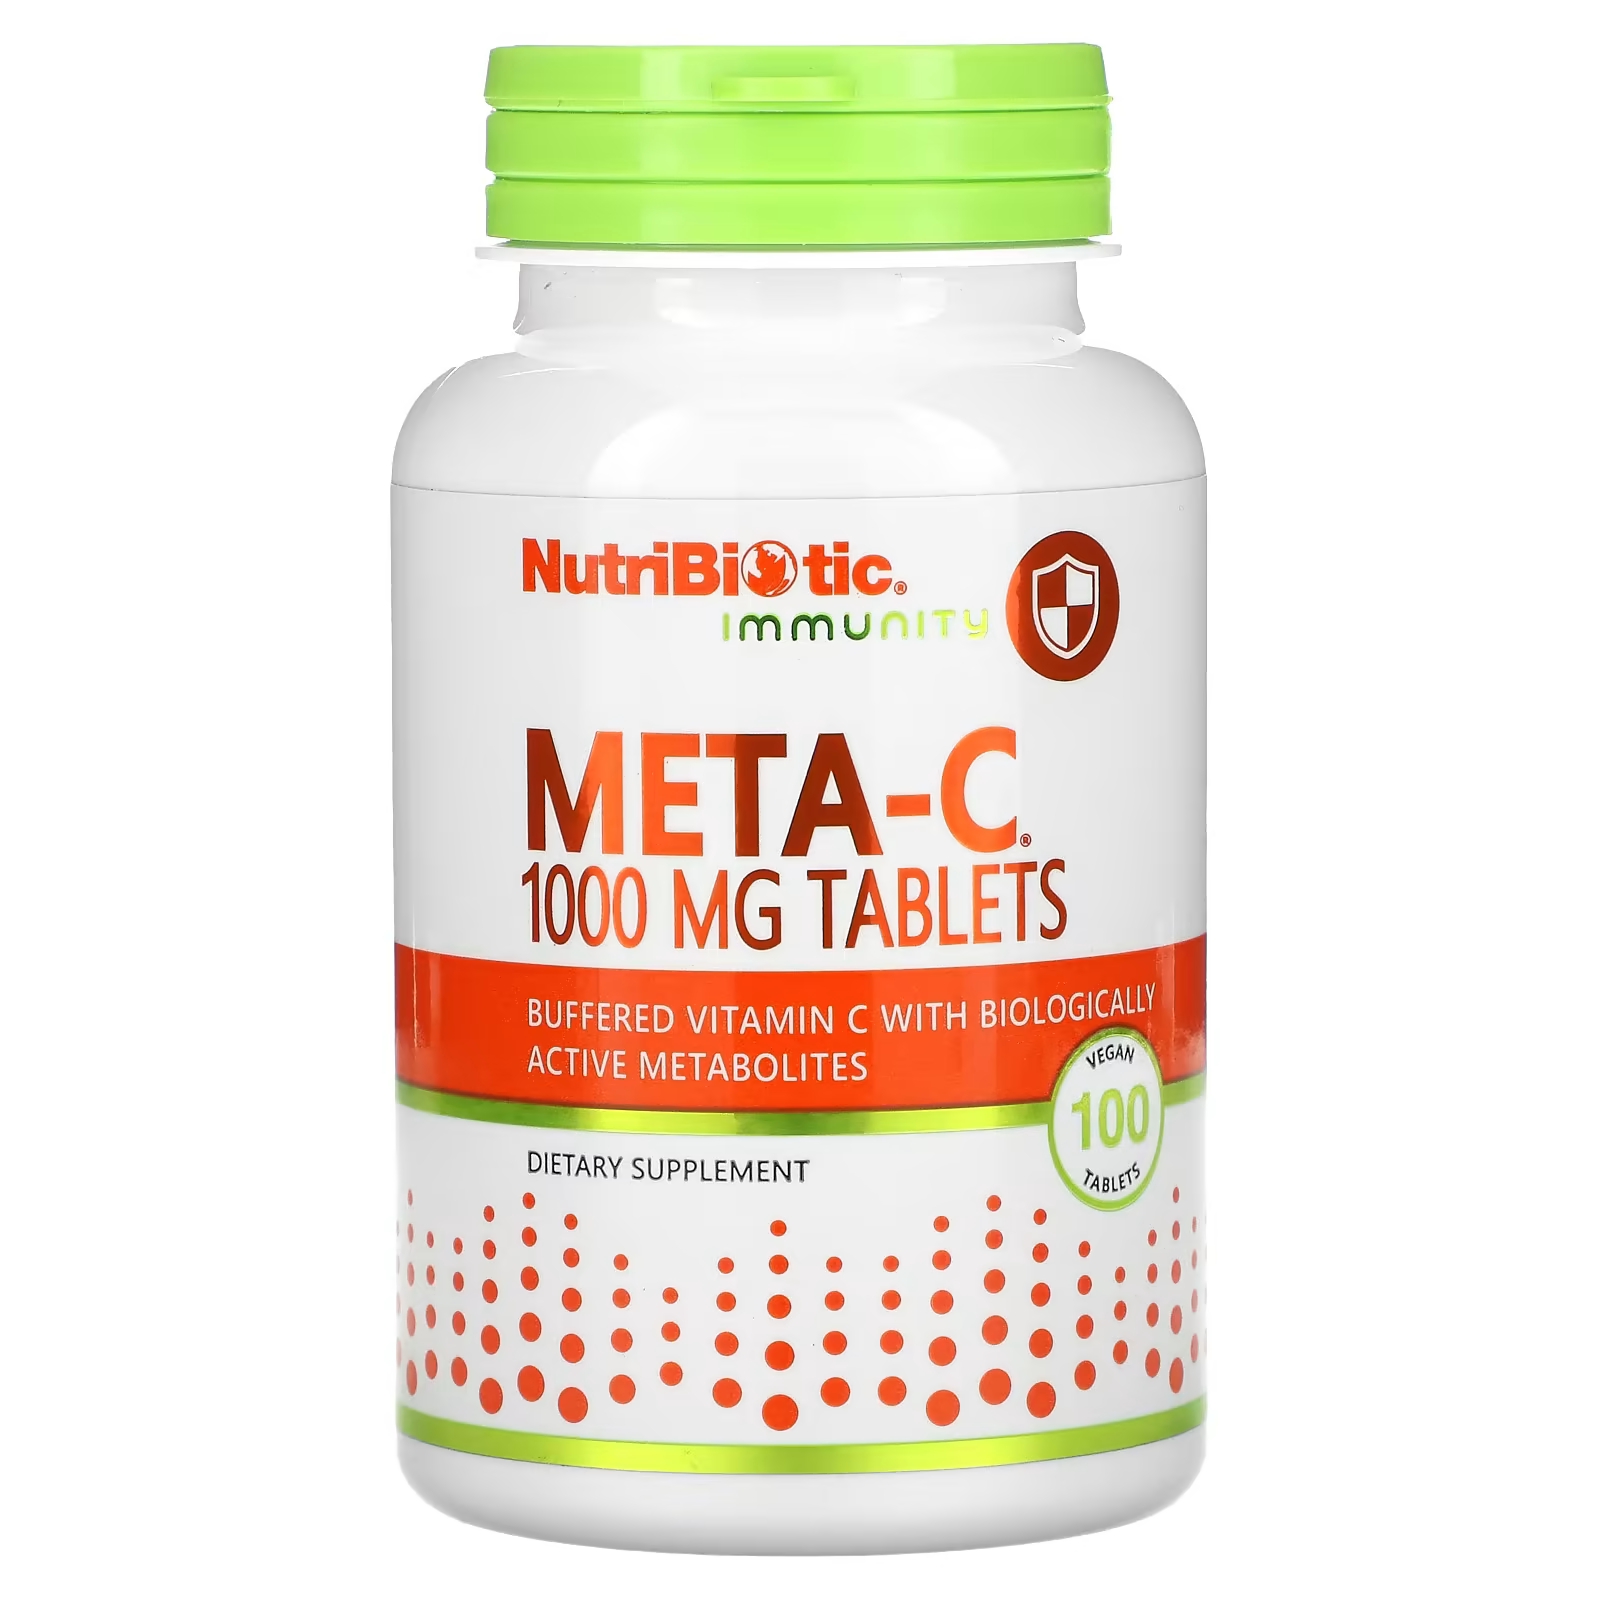 Пищевая добавка NutriBiotic Immunity Meta-C 1000 мг, 100 веганских таблеток nutribiotic immunity витамин c 1000 мг 100 веганских таблеток